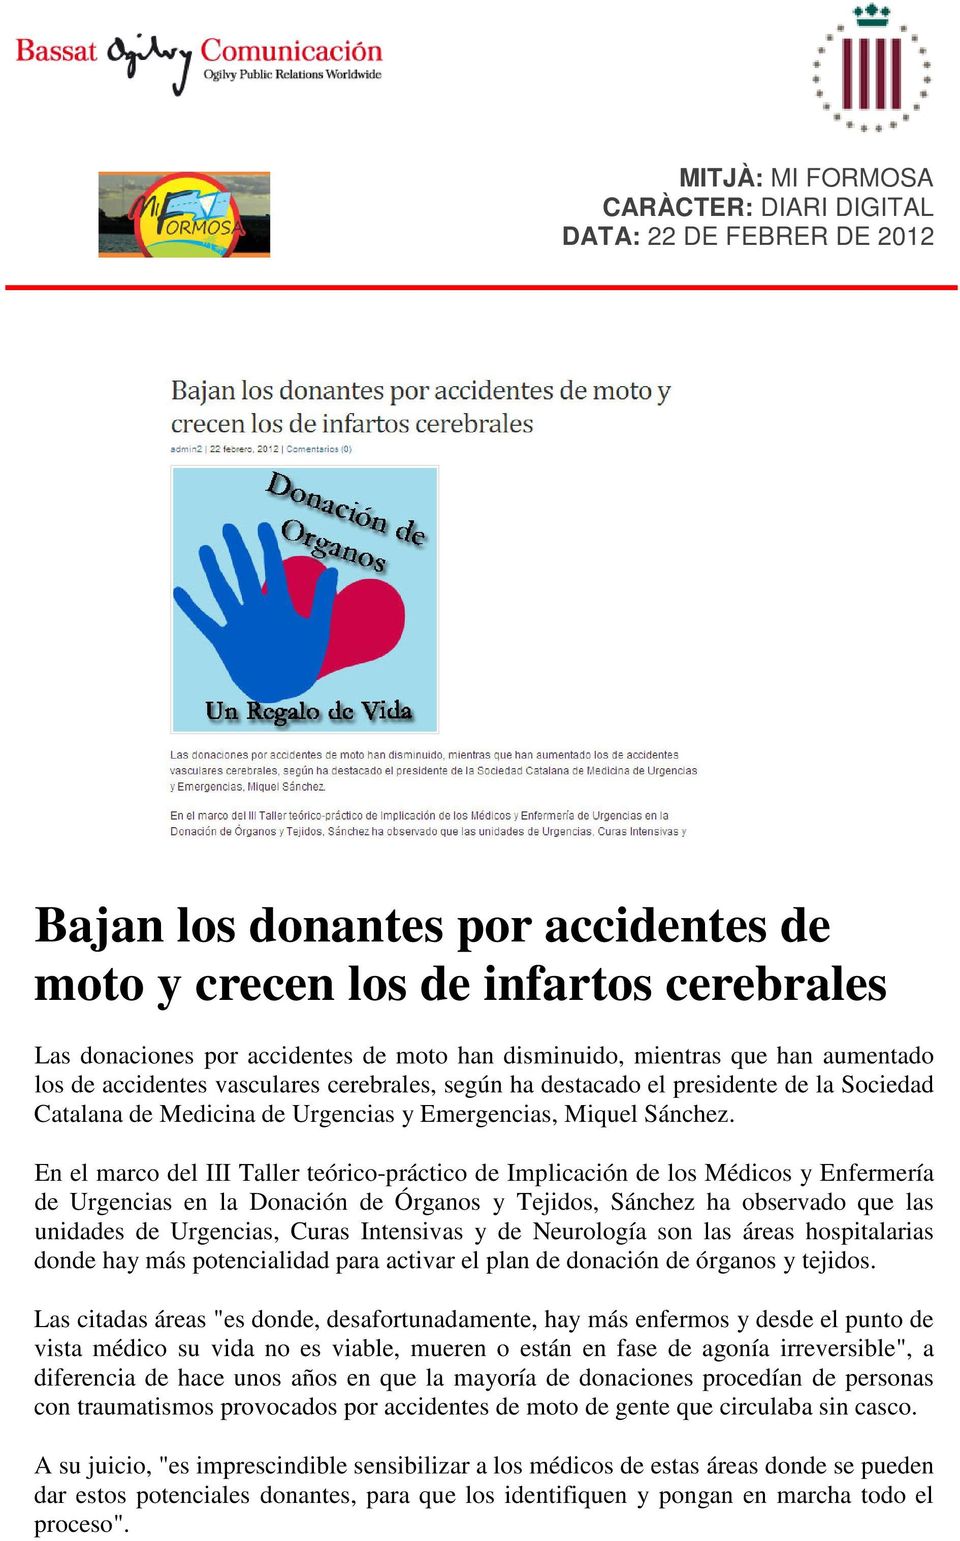 En el marco del III Taller teórico-práctico de Implicación de los Médicos y Enfermería de Urgencias en la Donación de Órganos y Tejidos, Sánchez ha observado que las unidades de Urgencias, Curas